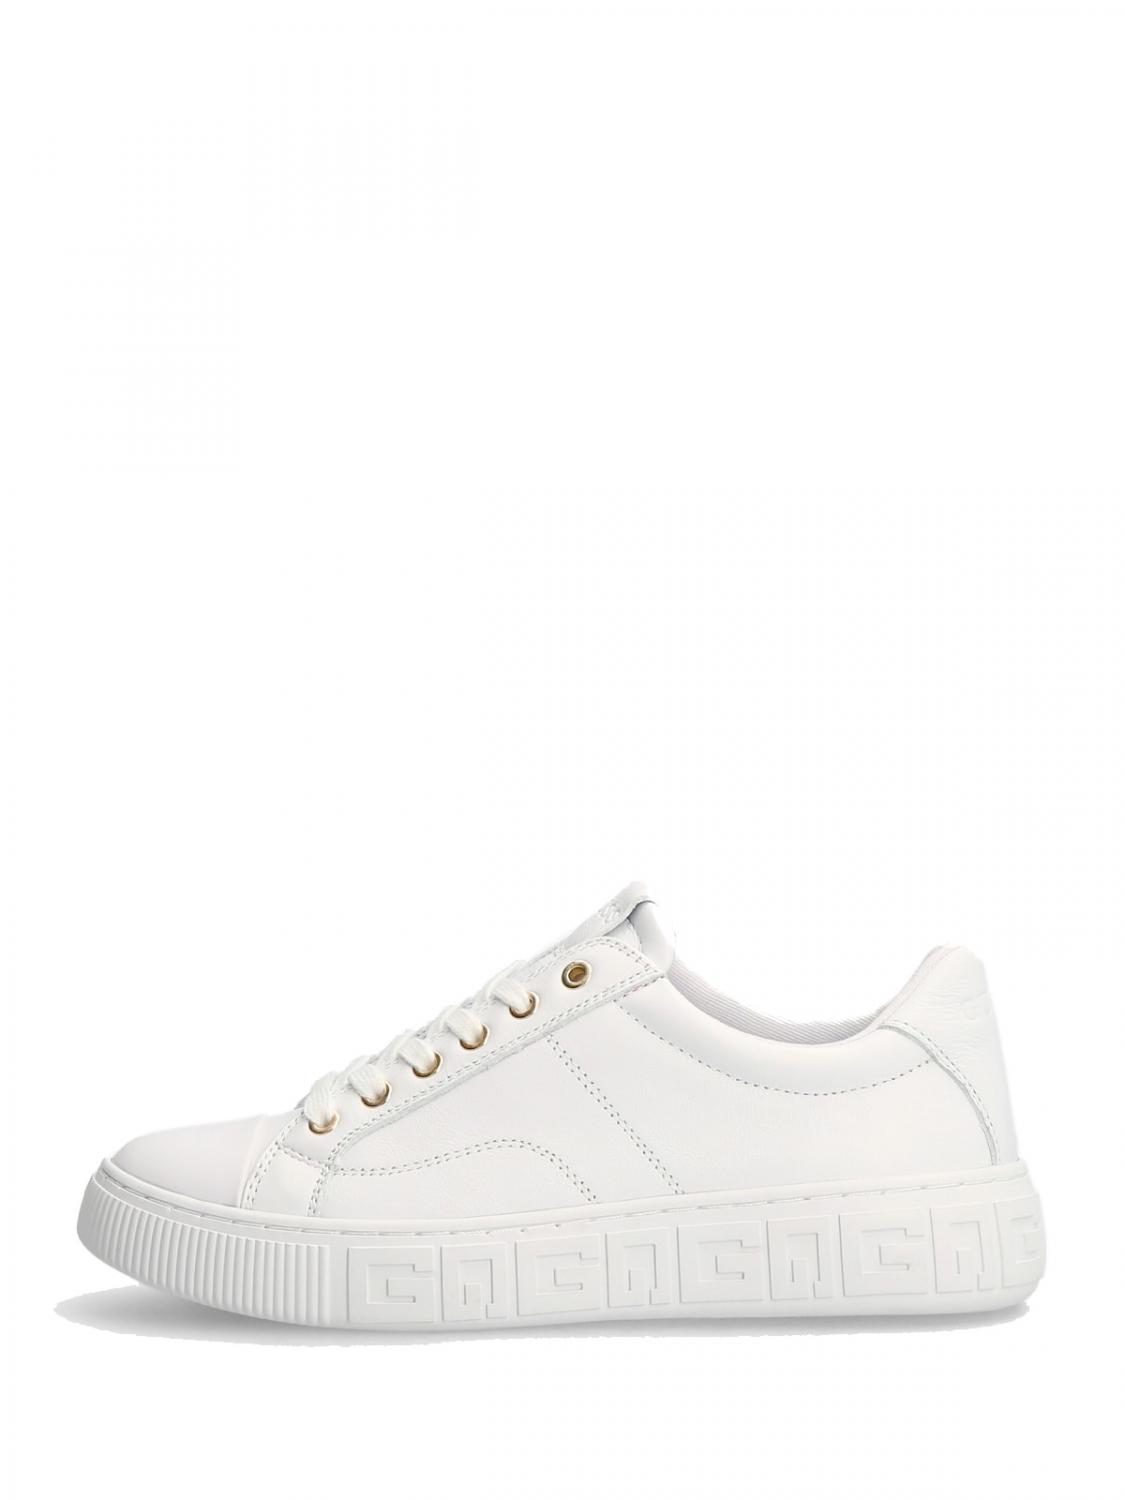 Guess Intrest Sneaker H4,5Cm Zapatillas - ¡Compra Precios De !